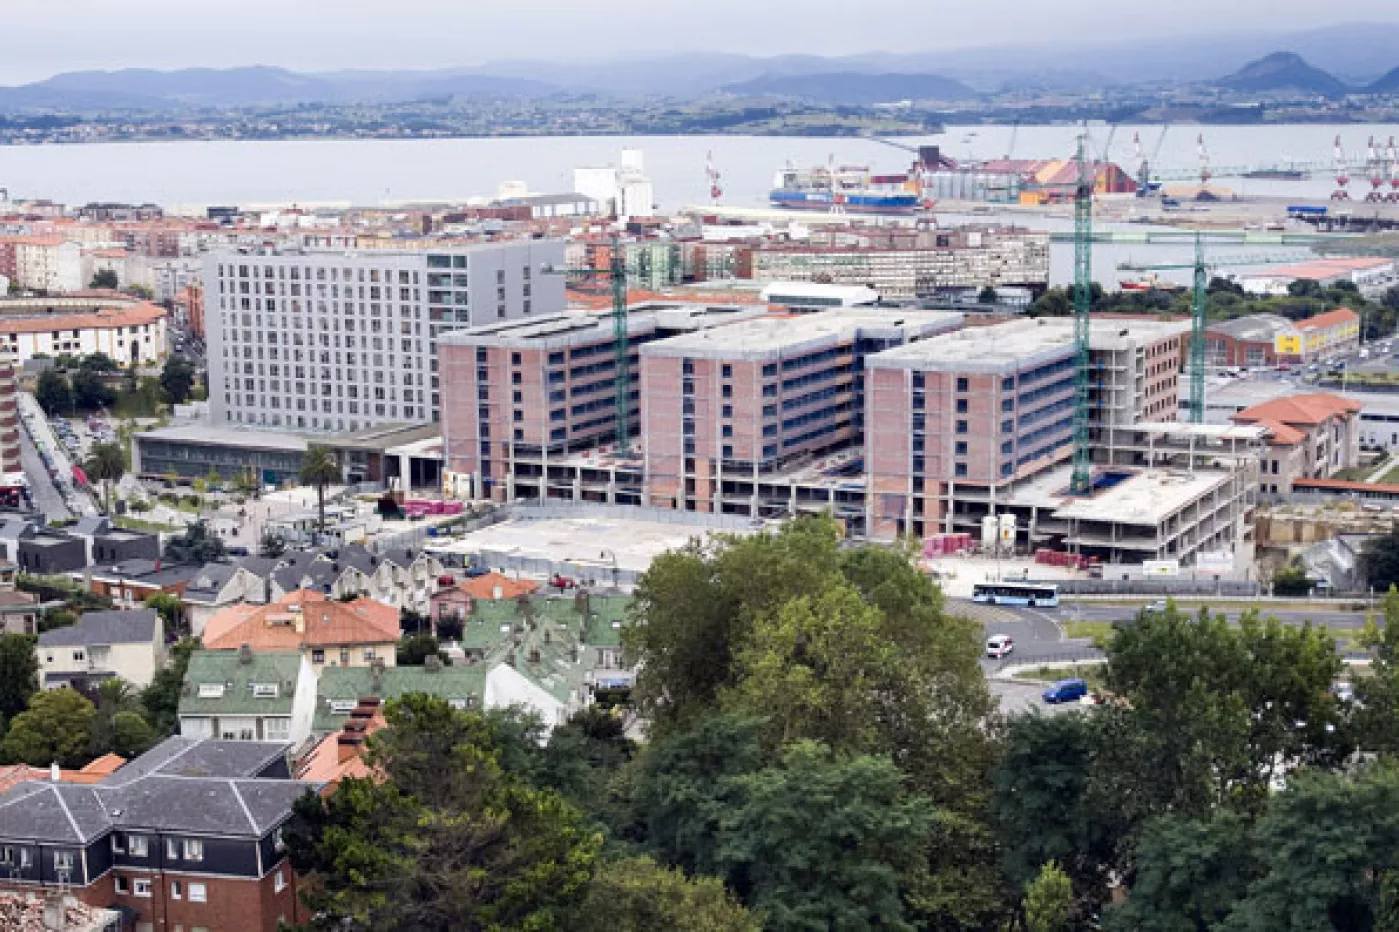 Vista del Hospital Universitario Marqués de Valdecilla, en Santander, durante las obras de ampliación en una foto de archivo.